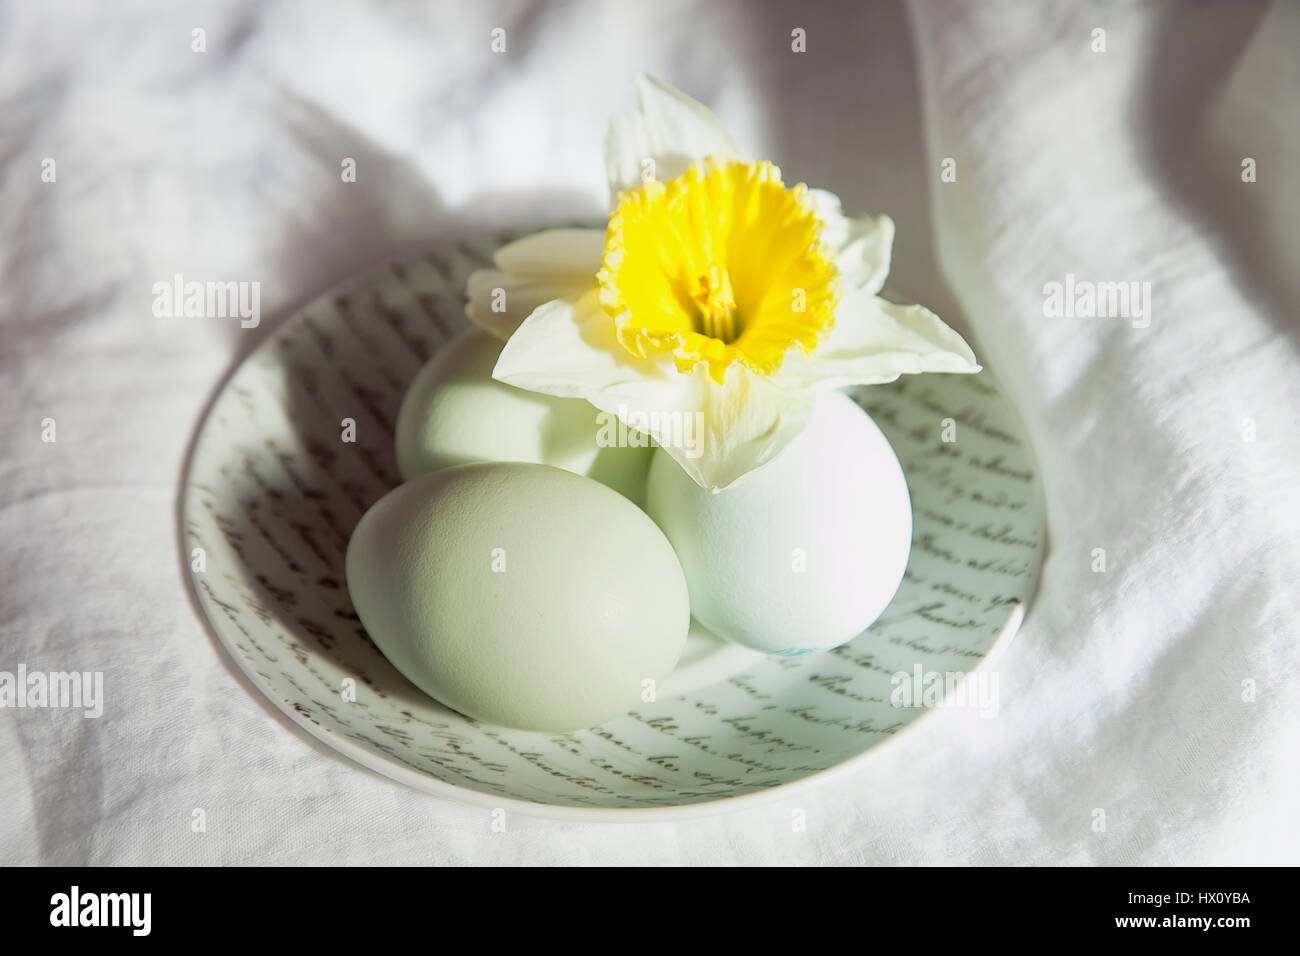 Sagre, religiosi, Pasqua, Studio shot di uova sul piattino in ceramica con giallo daffodil. Foto Stock